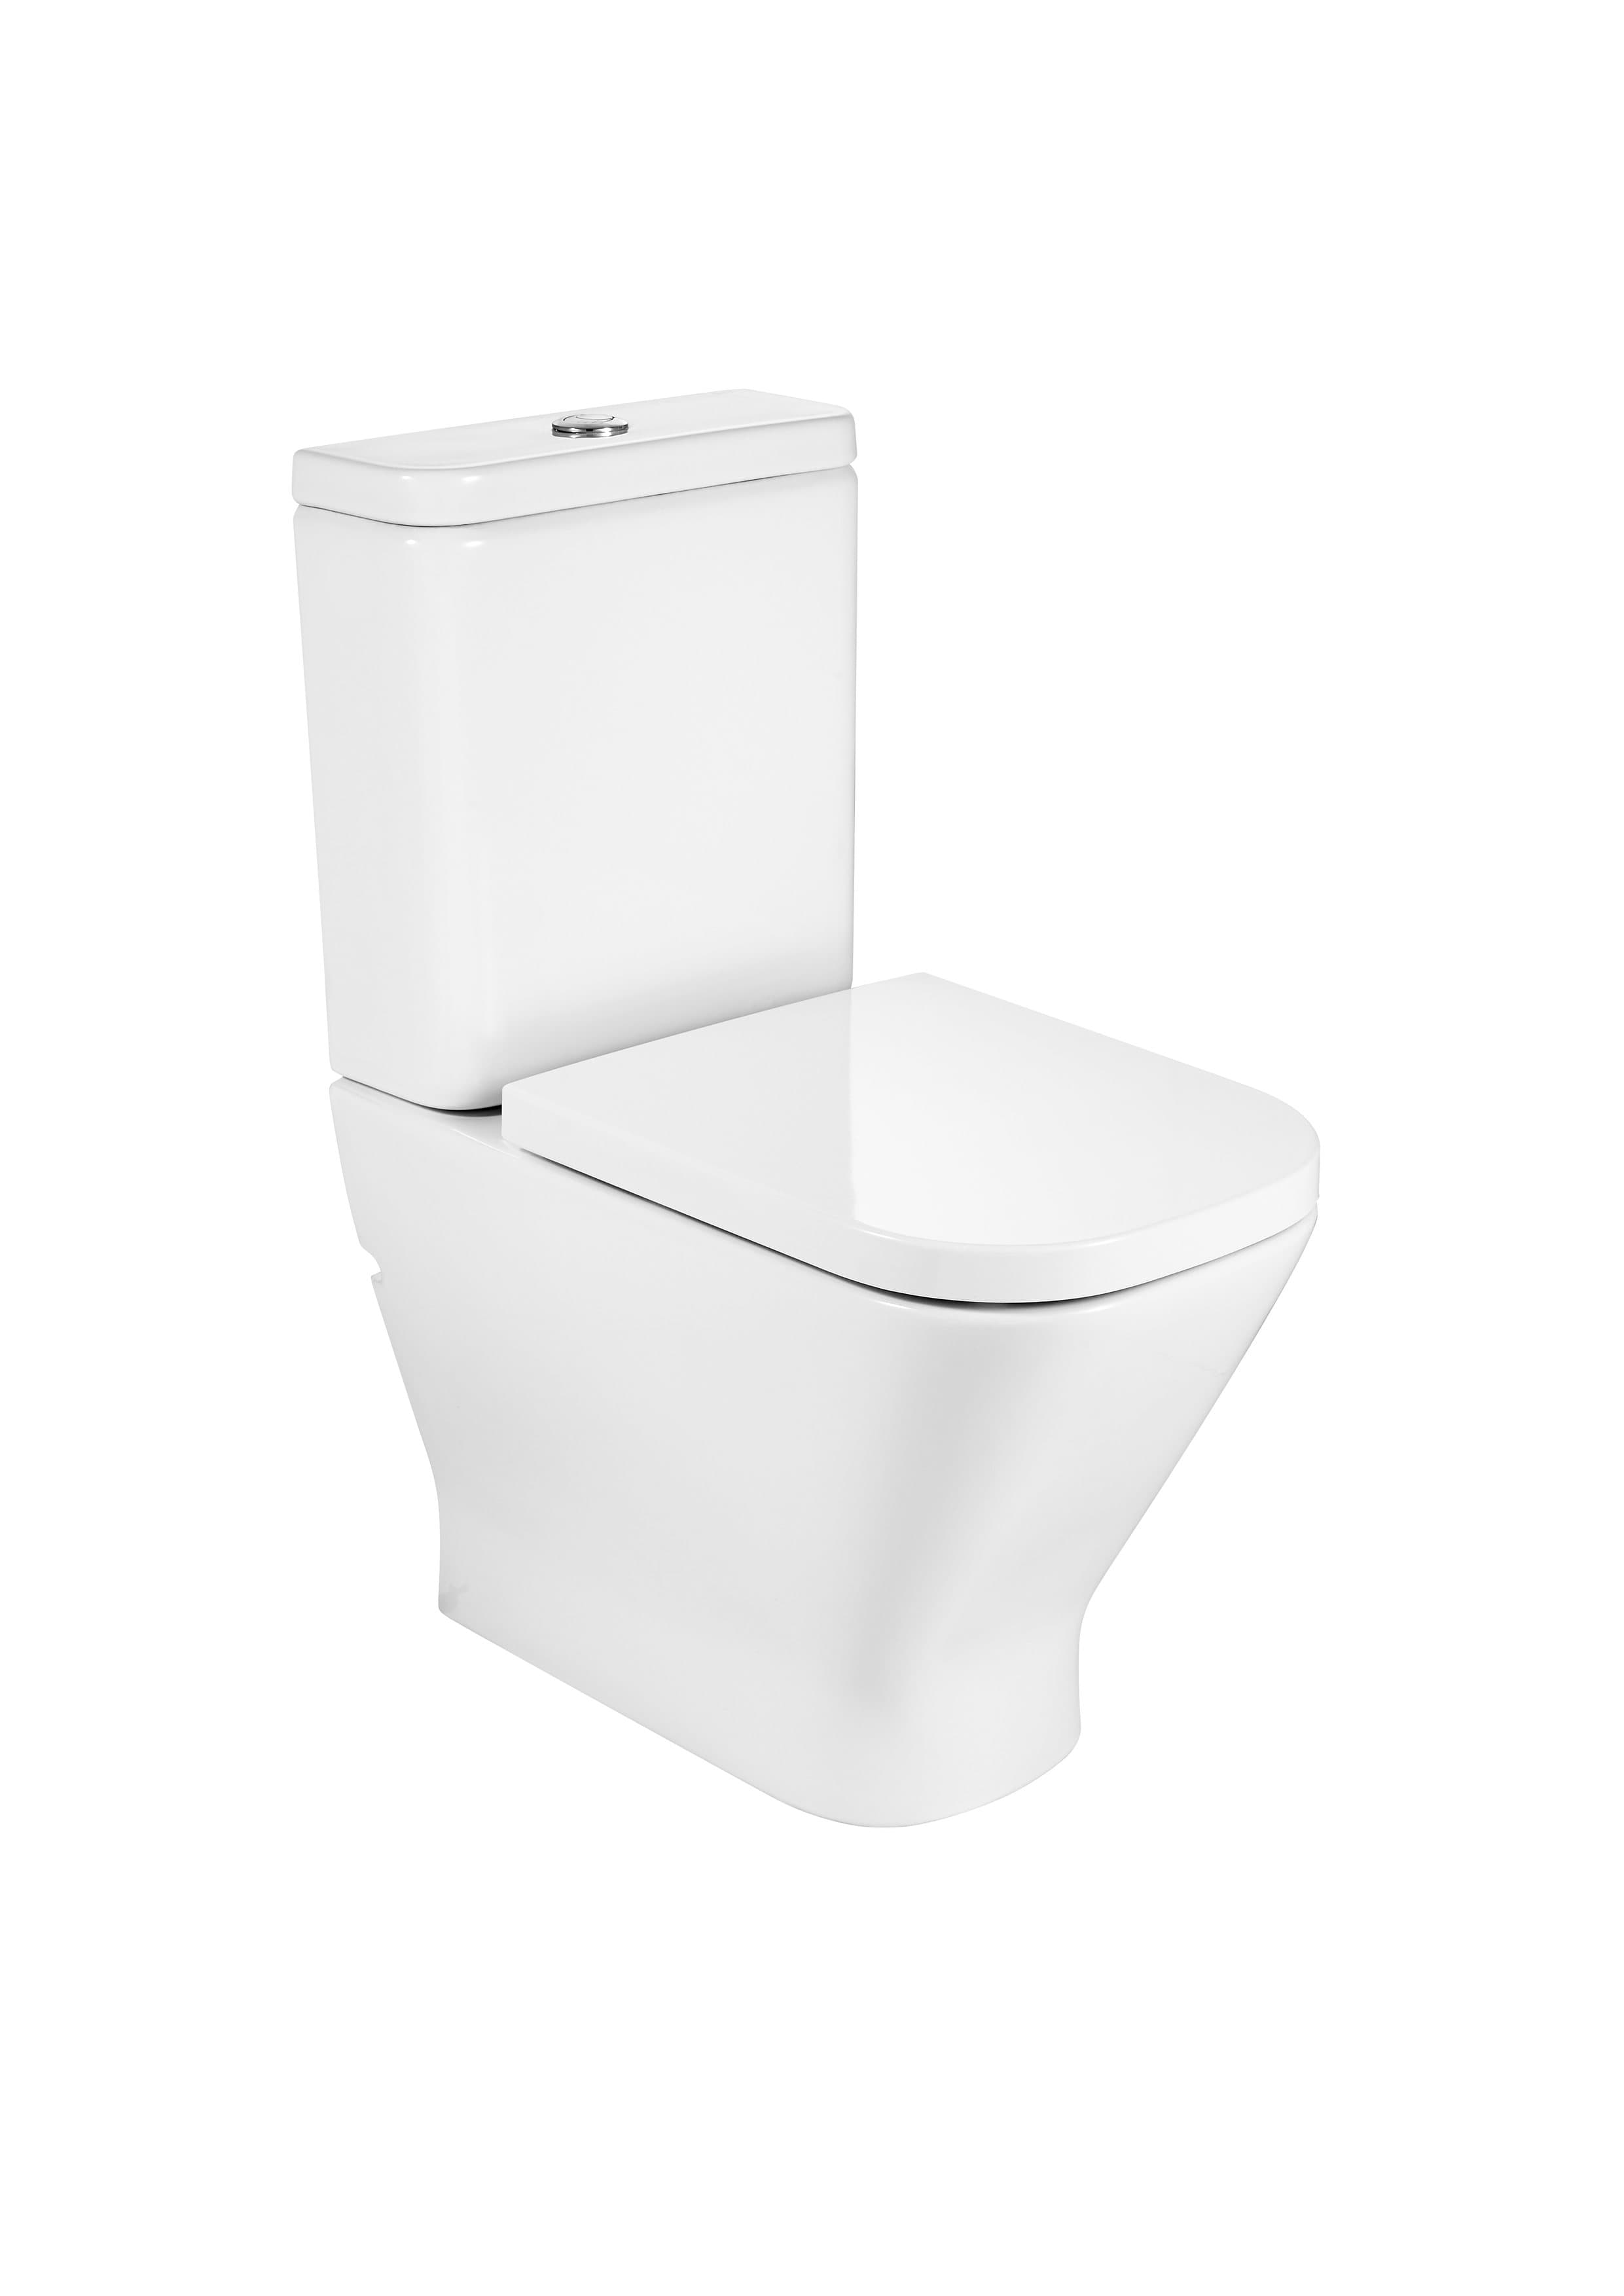 Sanitaire WC THE GAP A801470004 SQUARE - Abattant thermodur double laqué avec charnières en acier inoxydable pour WC Roca 5 - Mirage ceramica